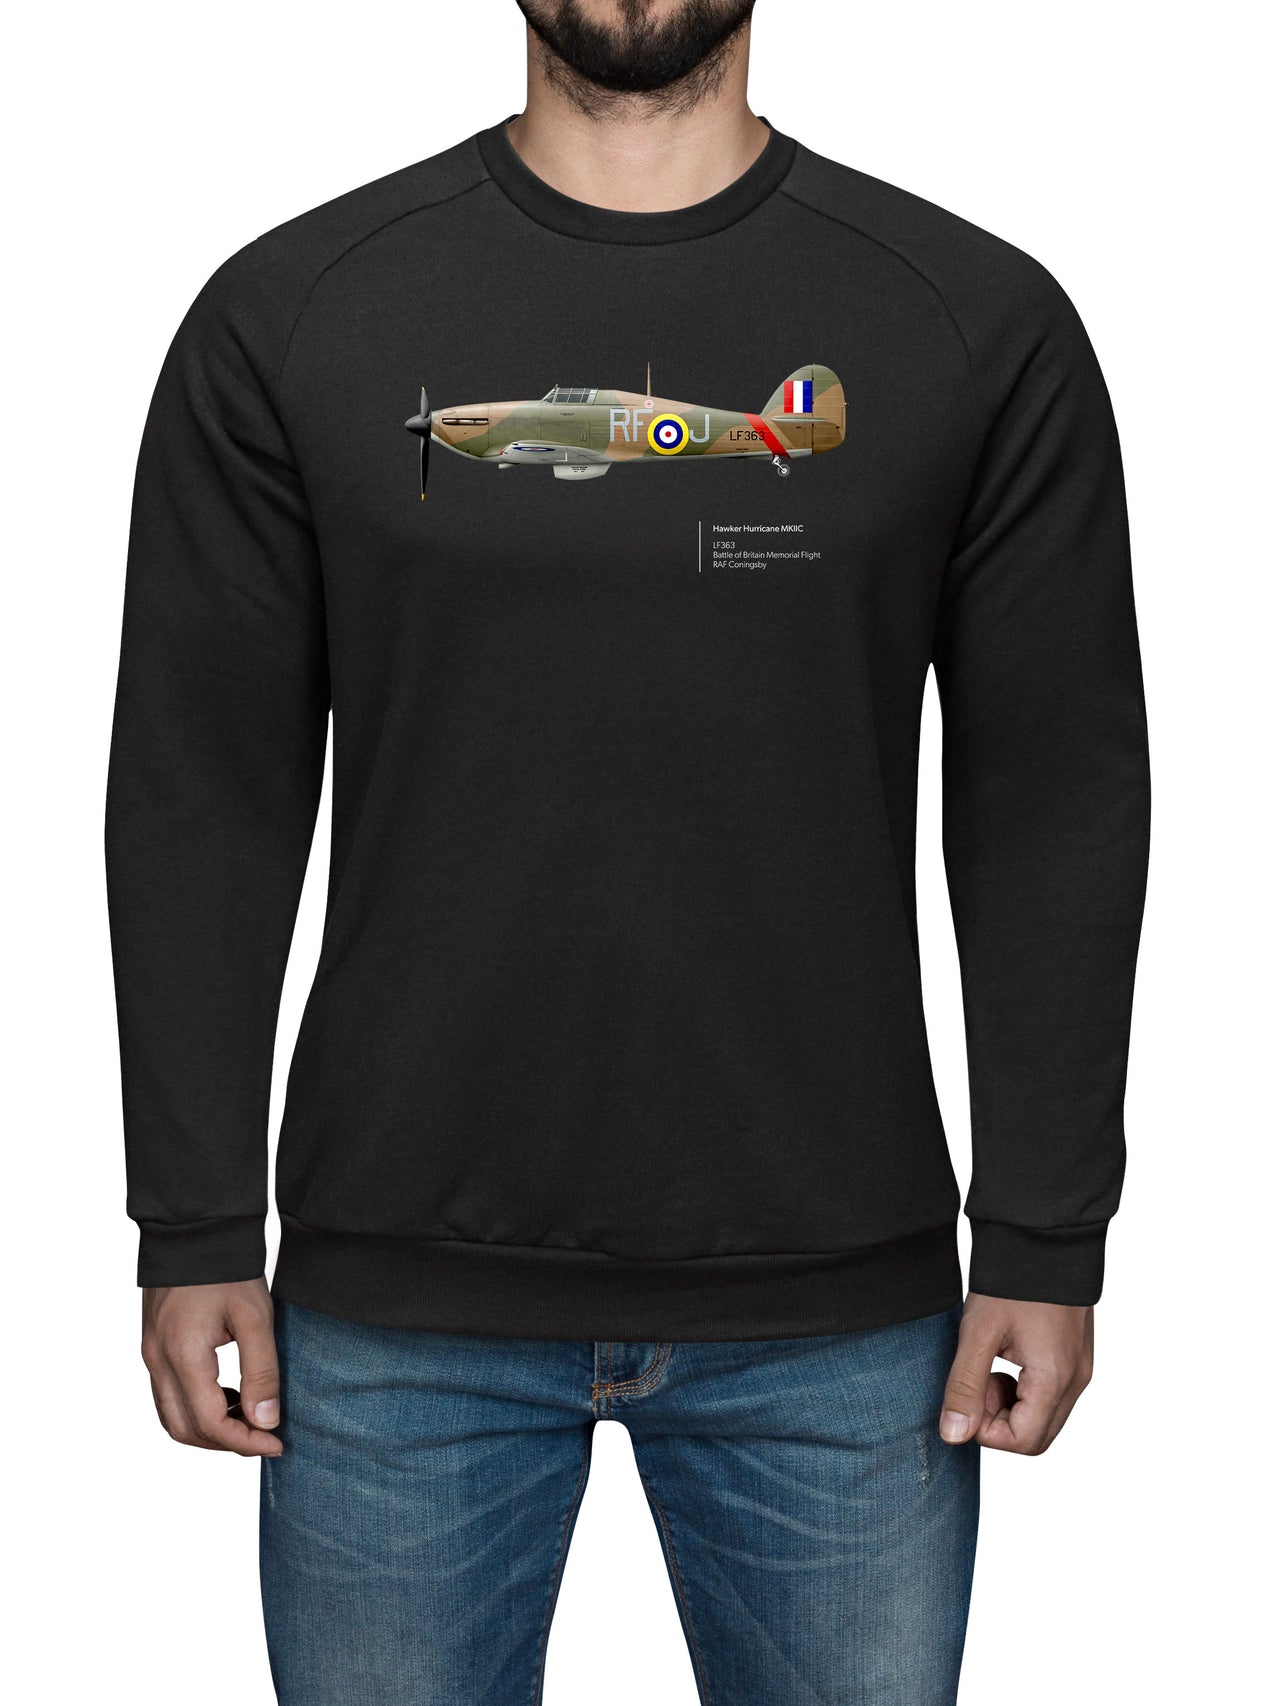 BBMF Hurricane MKIIC - Sweat Shirt